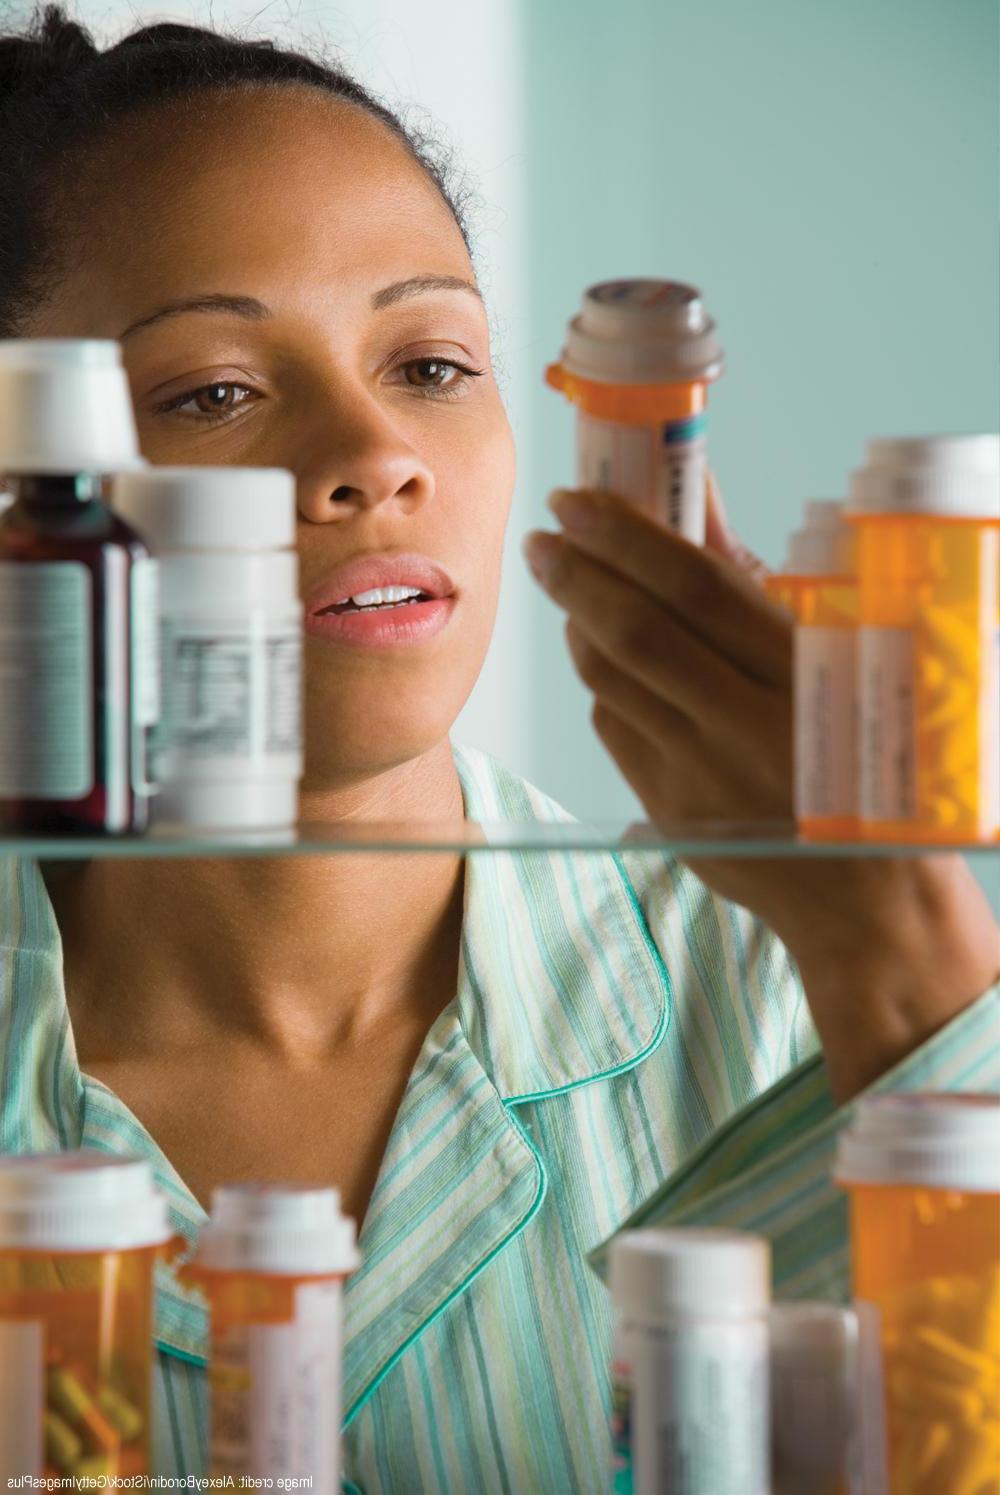 foto de una mujer inspeccionando medicamentos en el gabinete